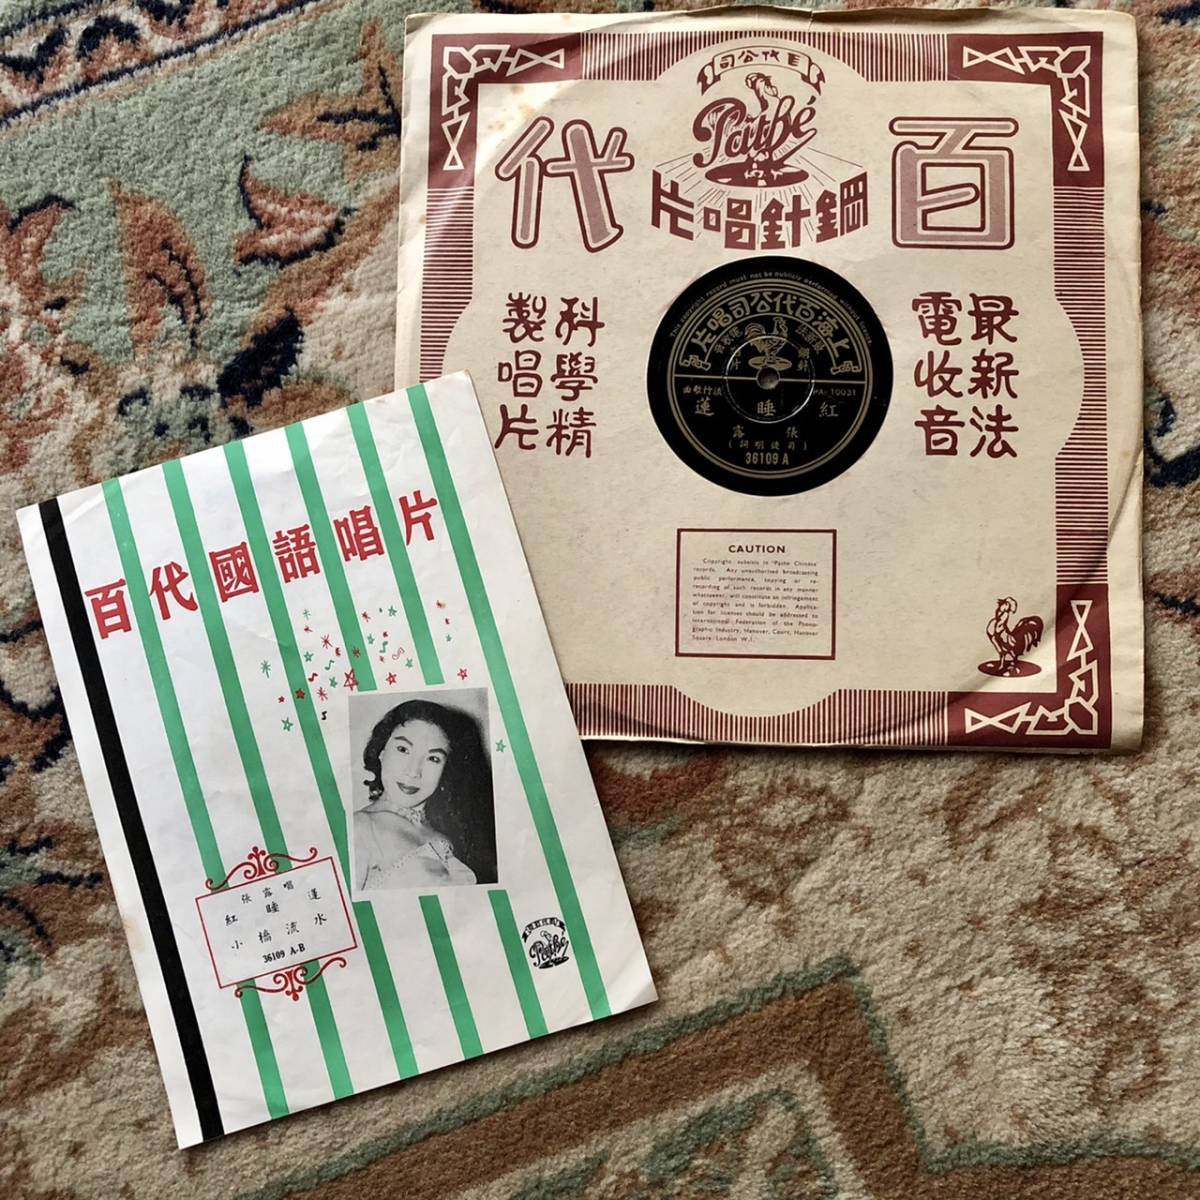 超歓迎されたSP盤SPレコード中國流行歌曲上海百代公司唱片紅睡蓮